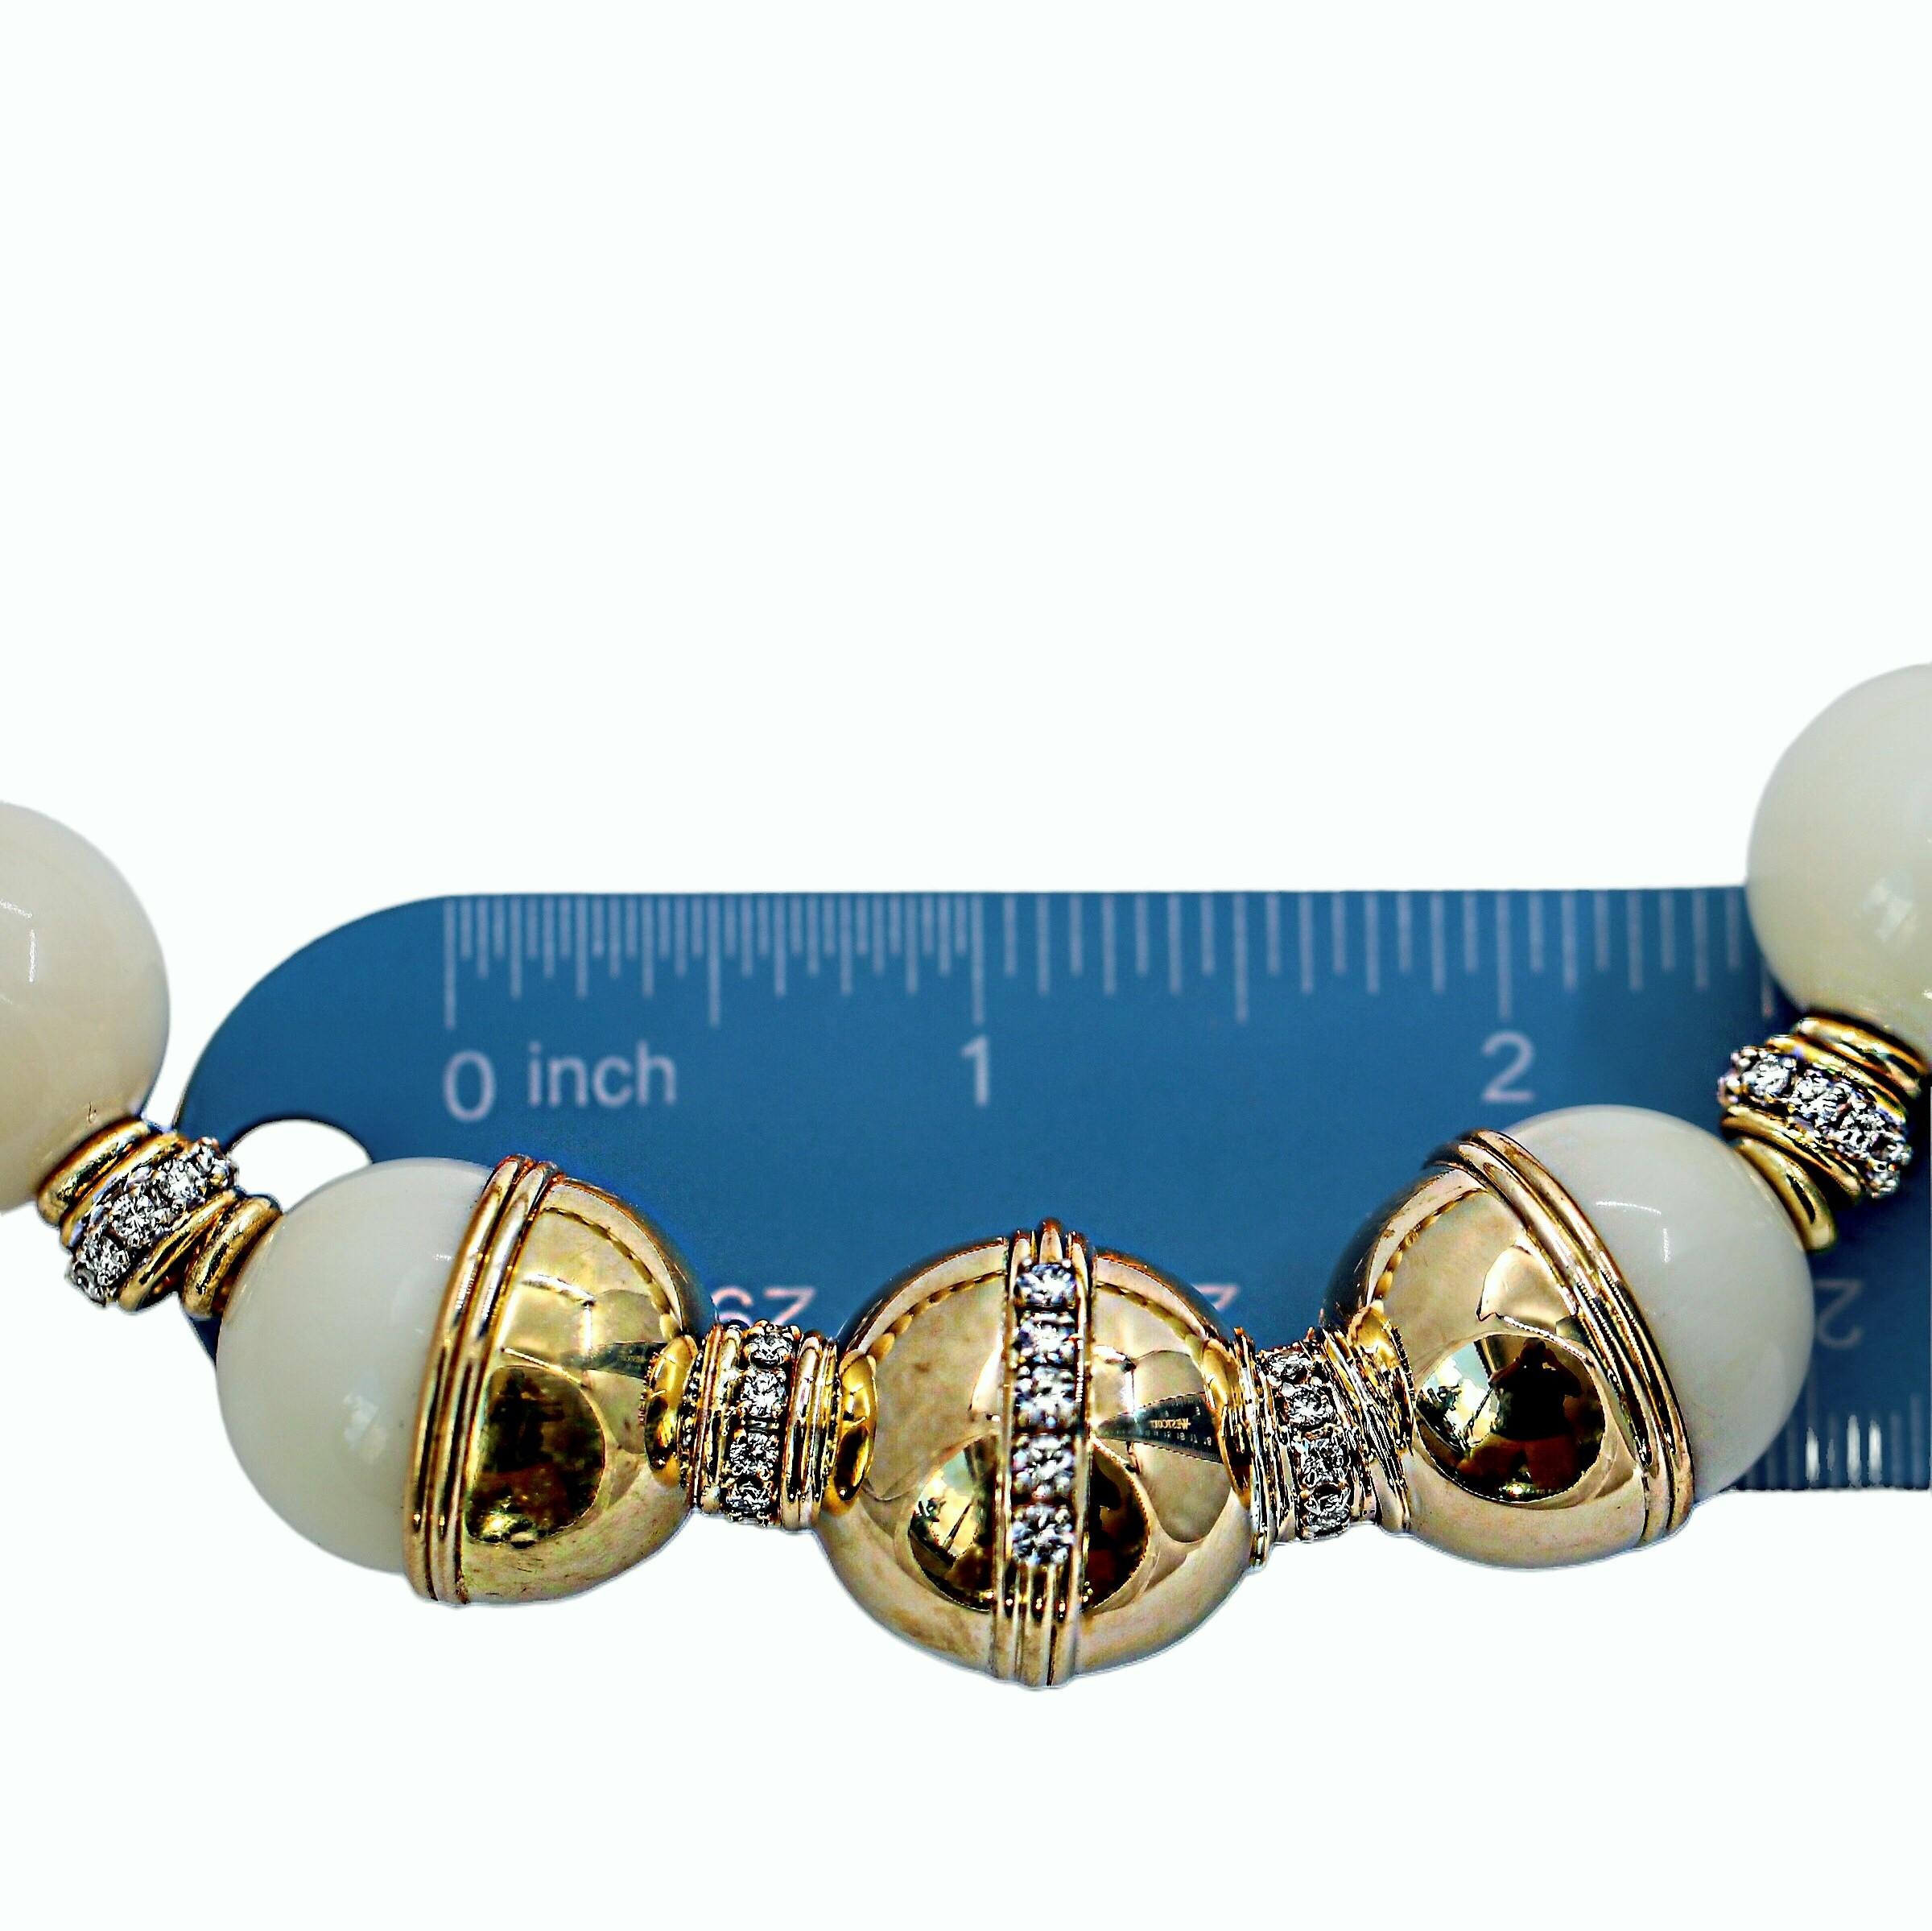 Taille brillant Emis Beros Collier audacieux en perles de corail blanc de 23 mm, or jaune 18 carats et diamants